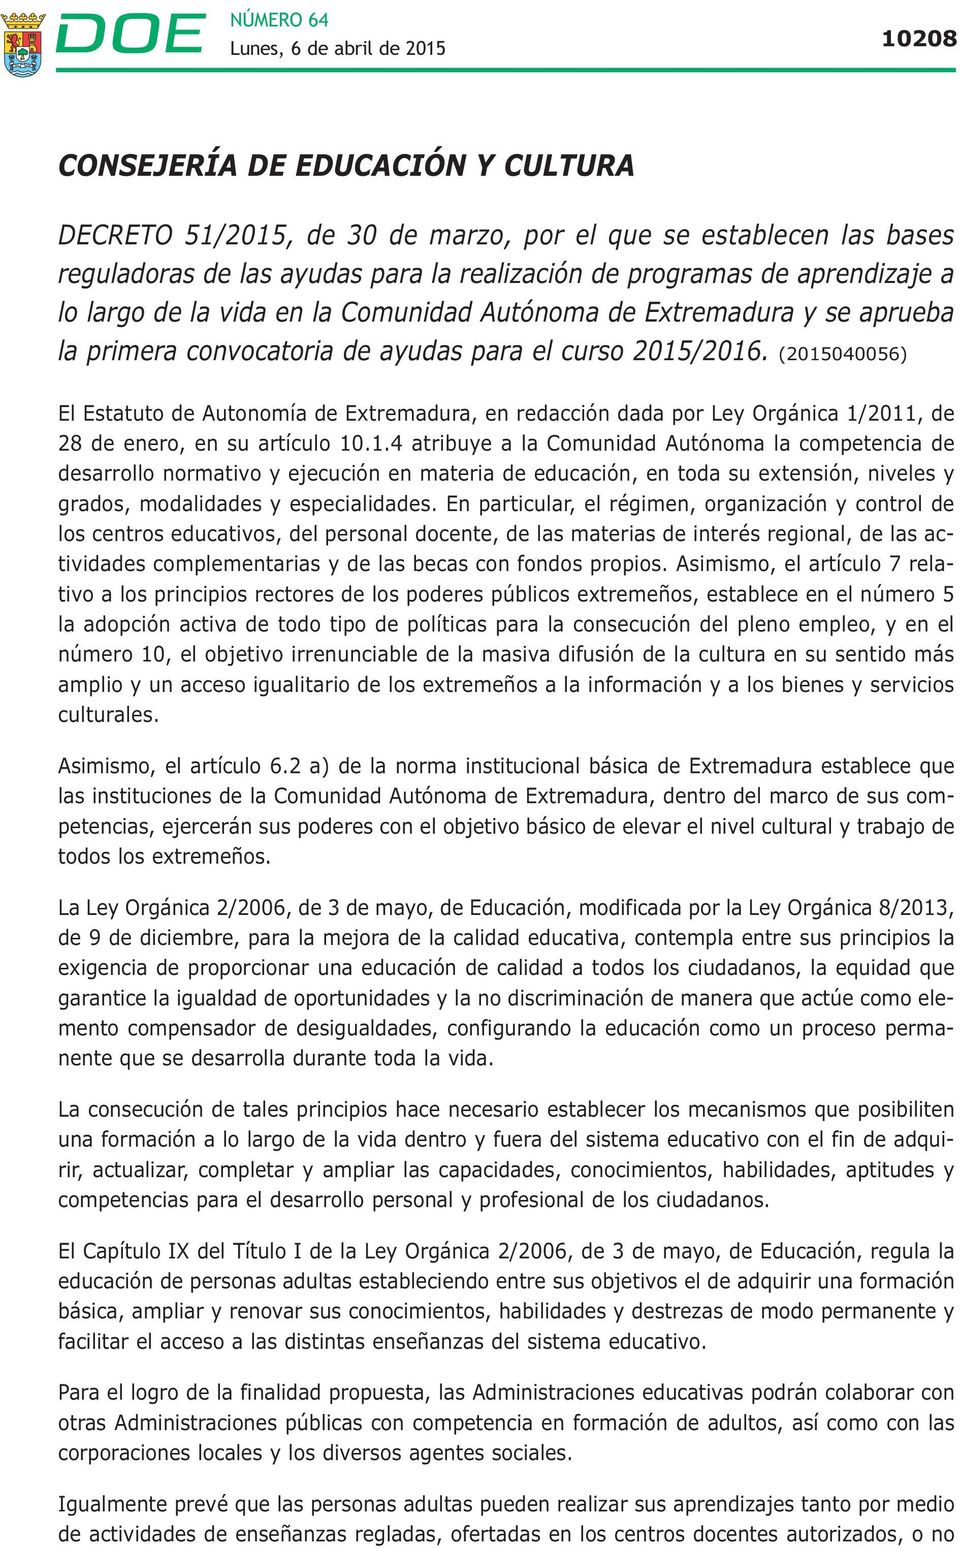 (2015040056) El Estatuto de Autonomía de Extremadura, en redacción dada por Ley Orgánica 1/2011, de 28 de enero, en su artículo 10.1.4 atribuye a la Comunidad Autónoma la competencia de desarrollo normativo y ejecución en materia de educación, en toda su extensión, niveles y grados, modalidades y especialidades.